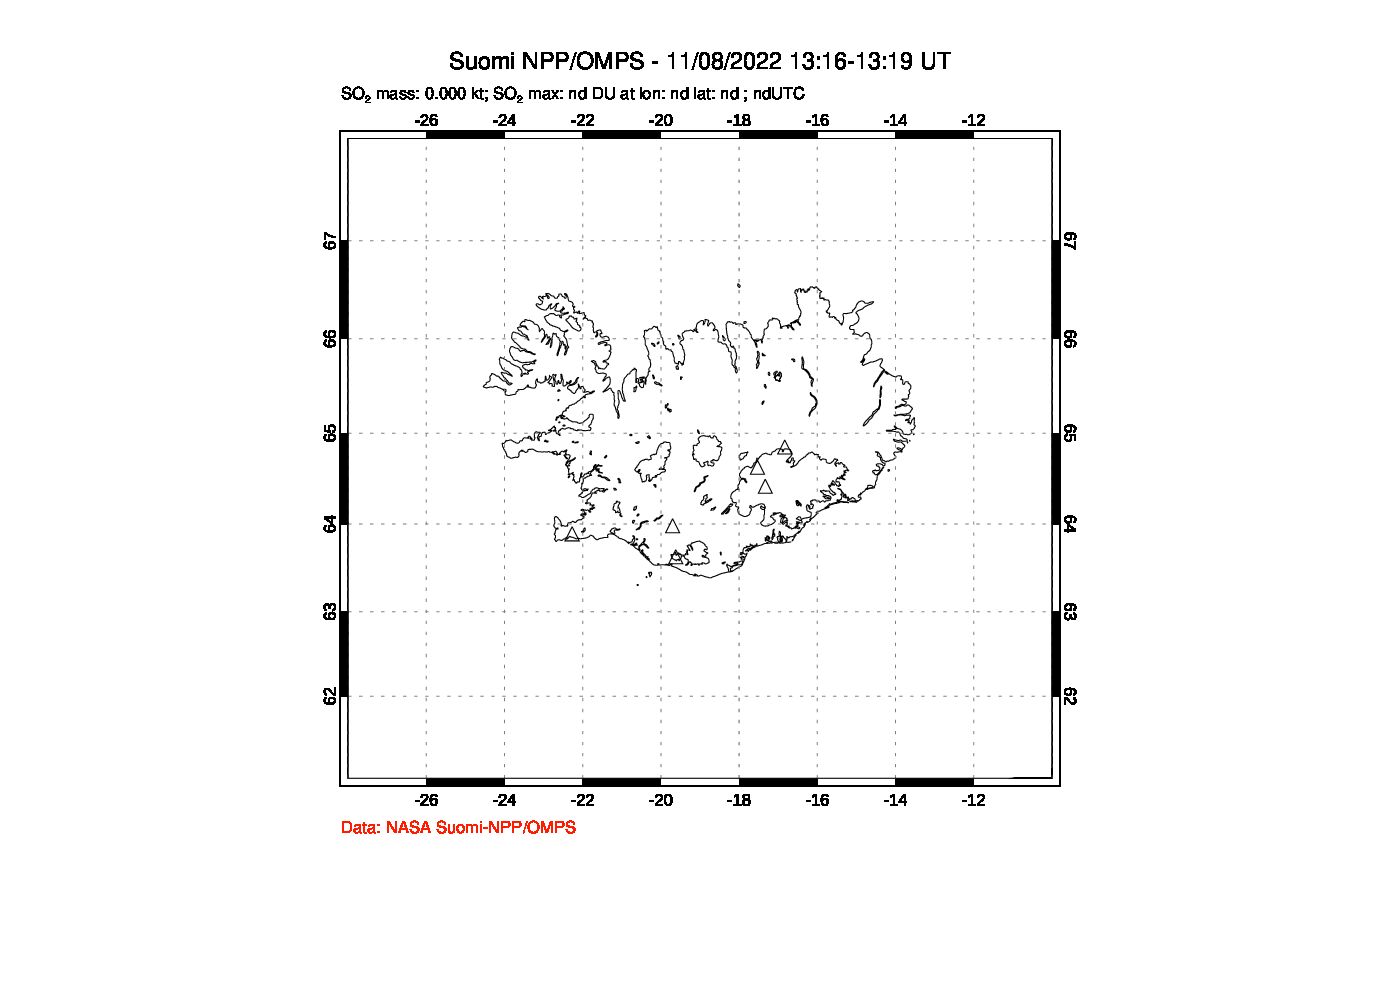 A sulfur dioxide image over Iceland on Nov 08, 2022.